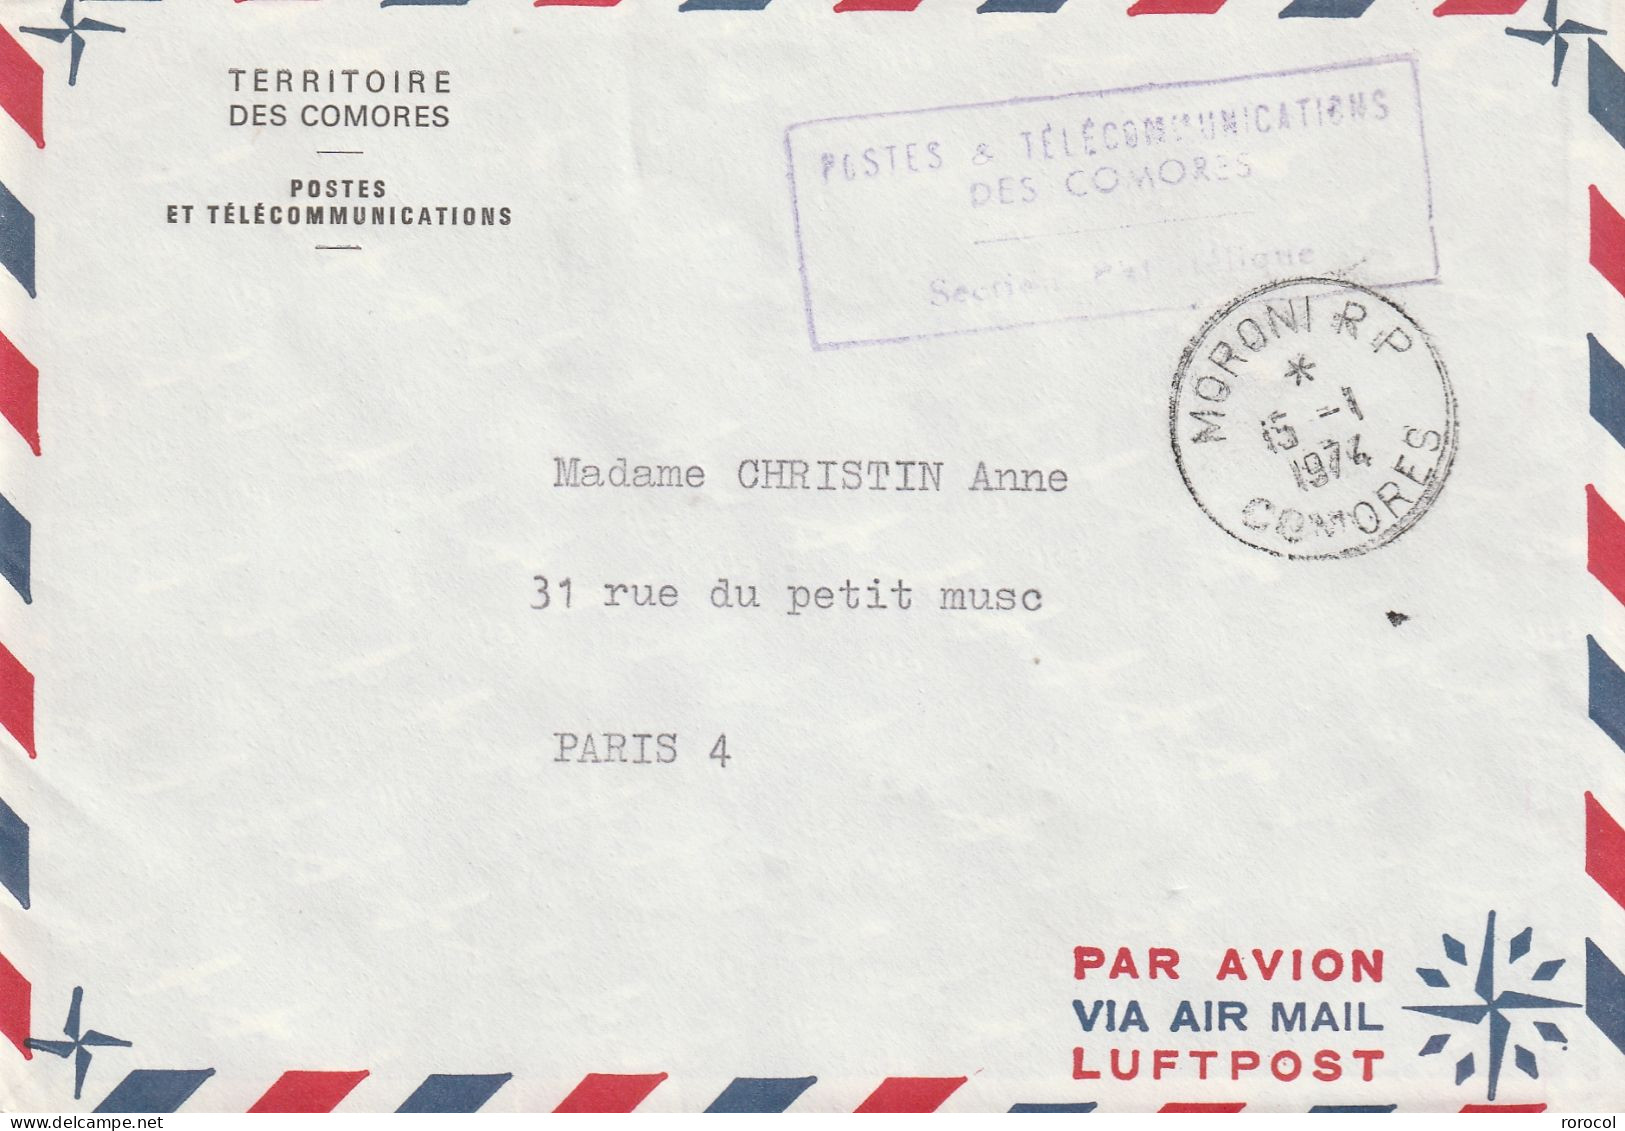 COMORES Lettre De Service MORONI RP 1974 POUR PARIS TERRITOIRE DES COMORES POSTES ET TELECOMMUNICATIONS - Covers & Documents